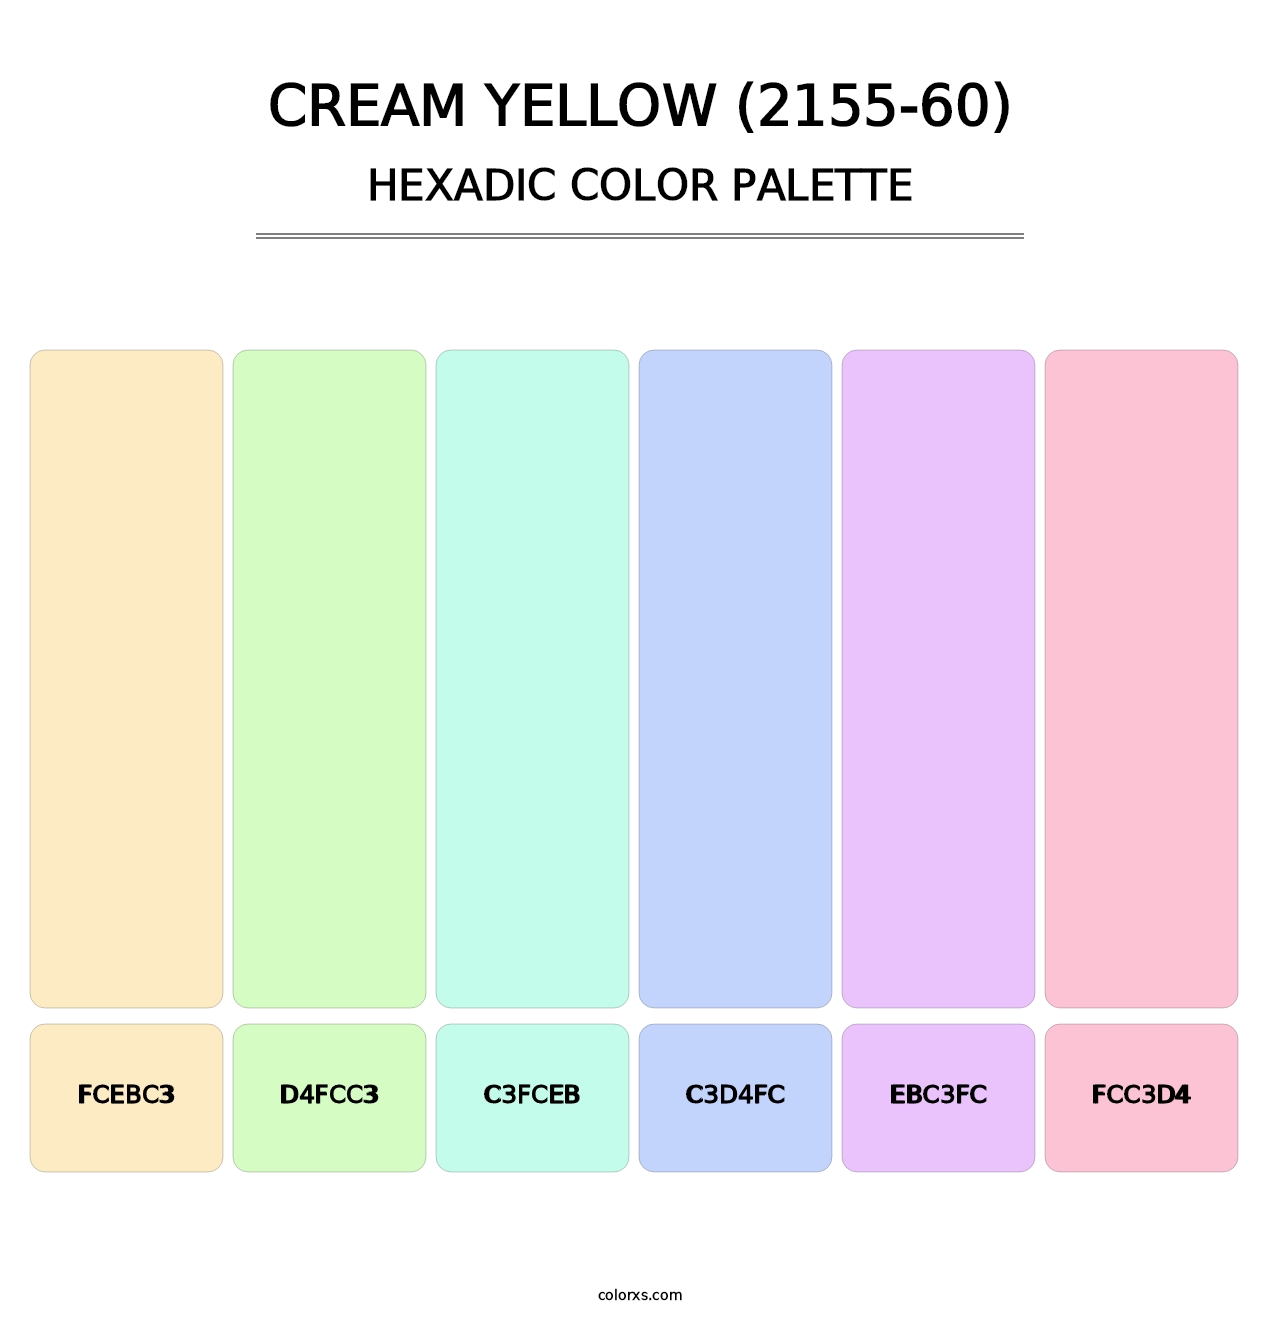 Cream Yellow (2155-60) - Hexadic Color Palette